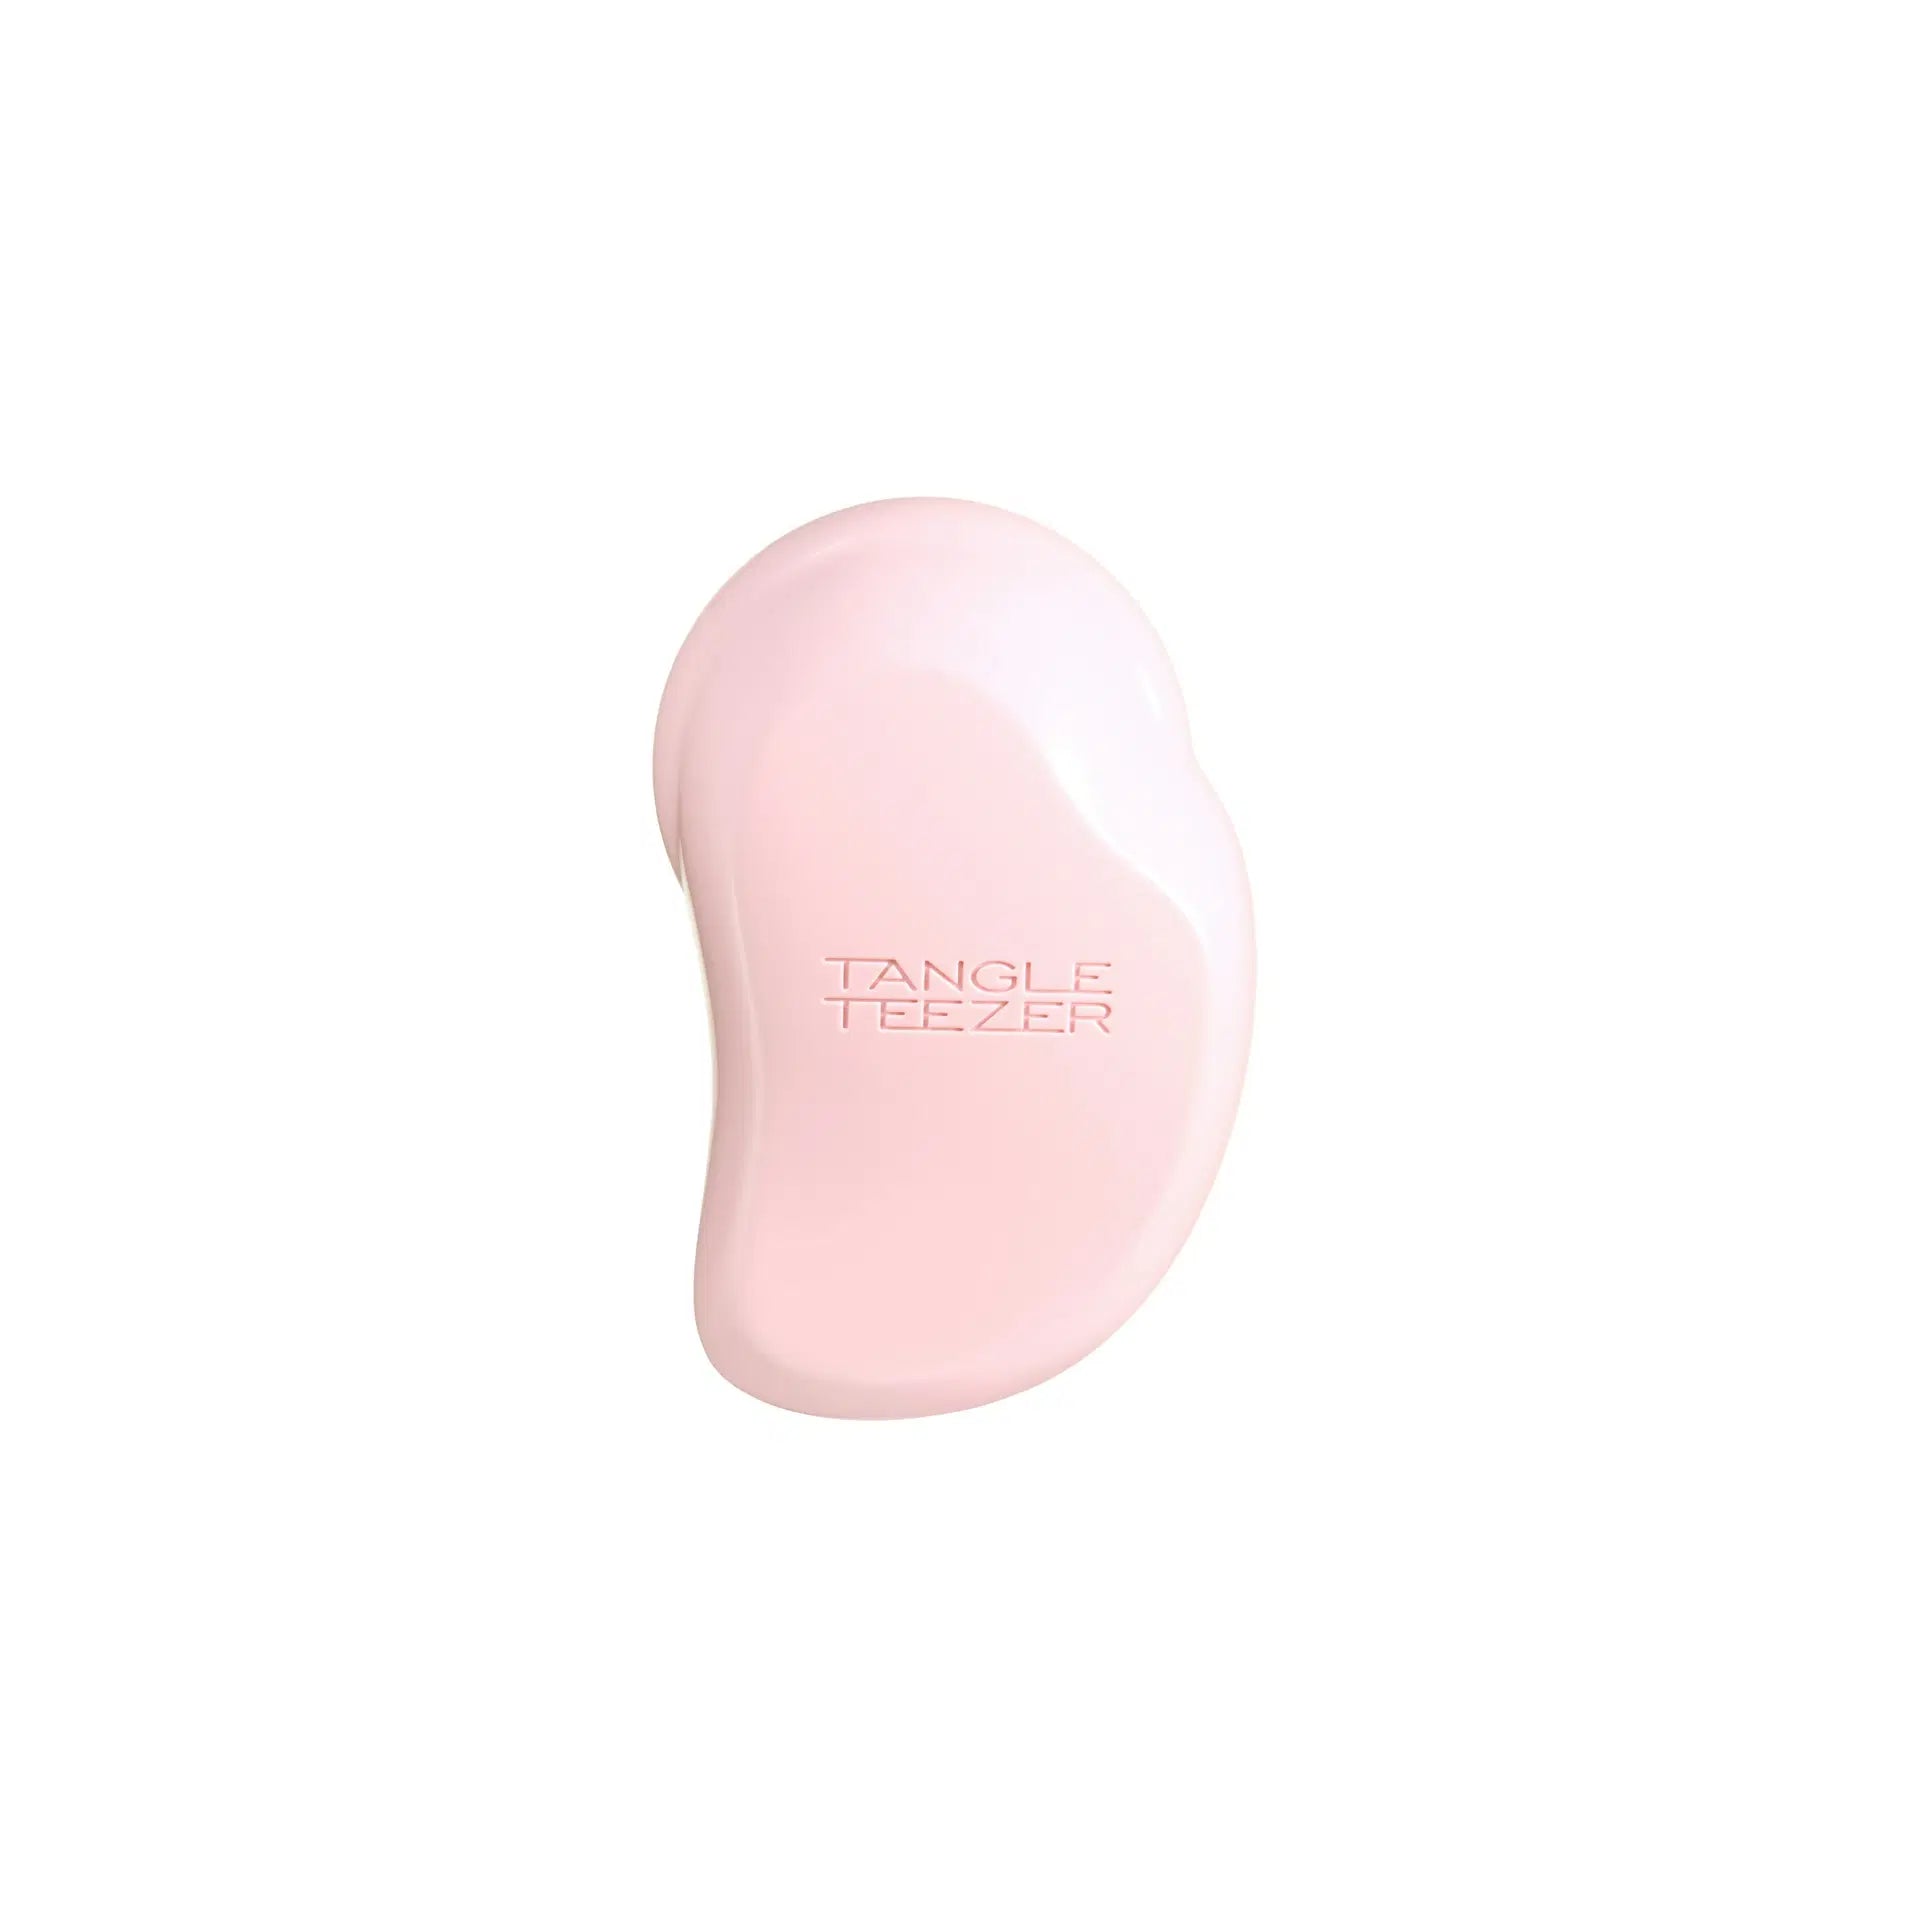 Tangle Teezer Small Original Millennial Pink